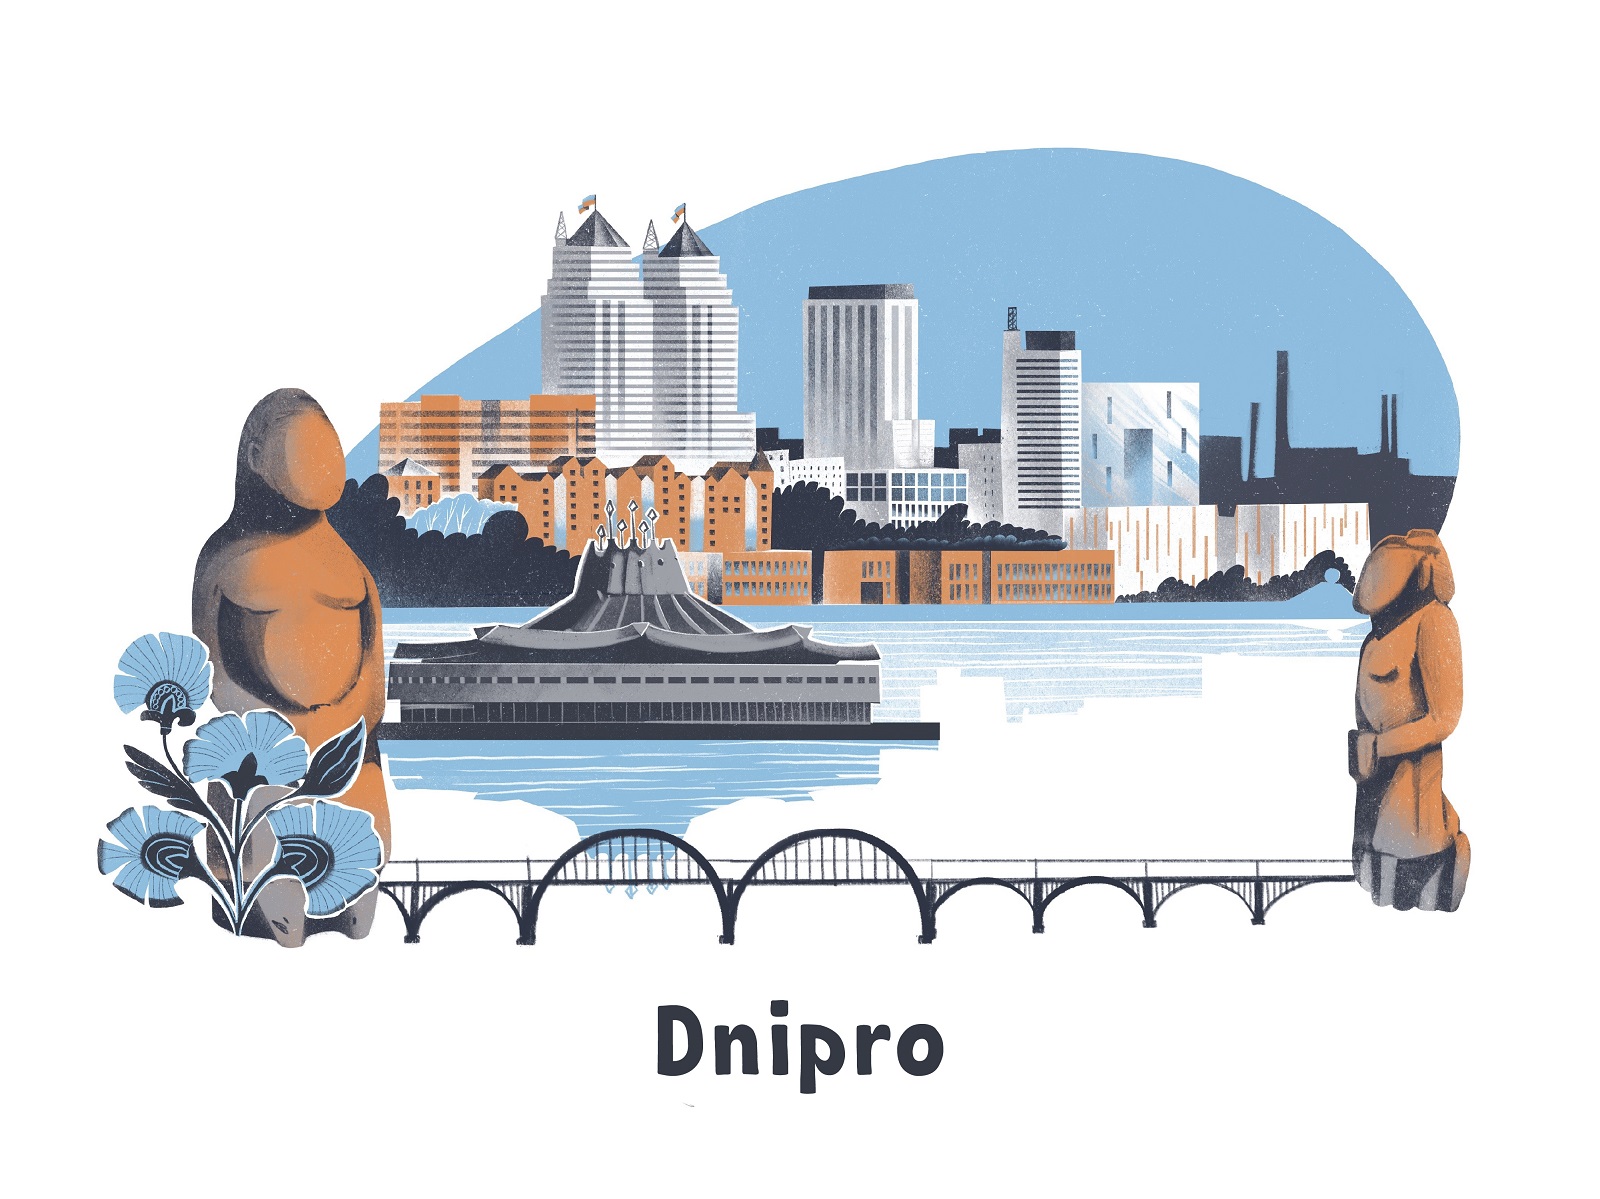 cities of Ukraine Dnipro tubikarts illustration